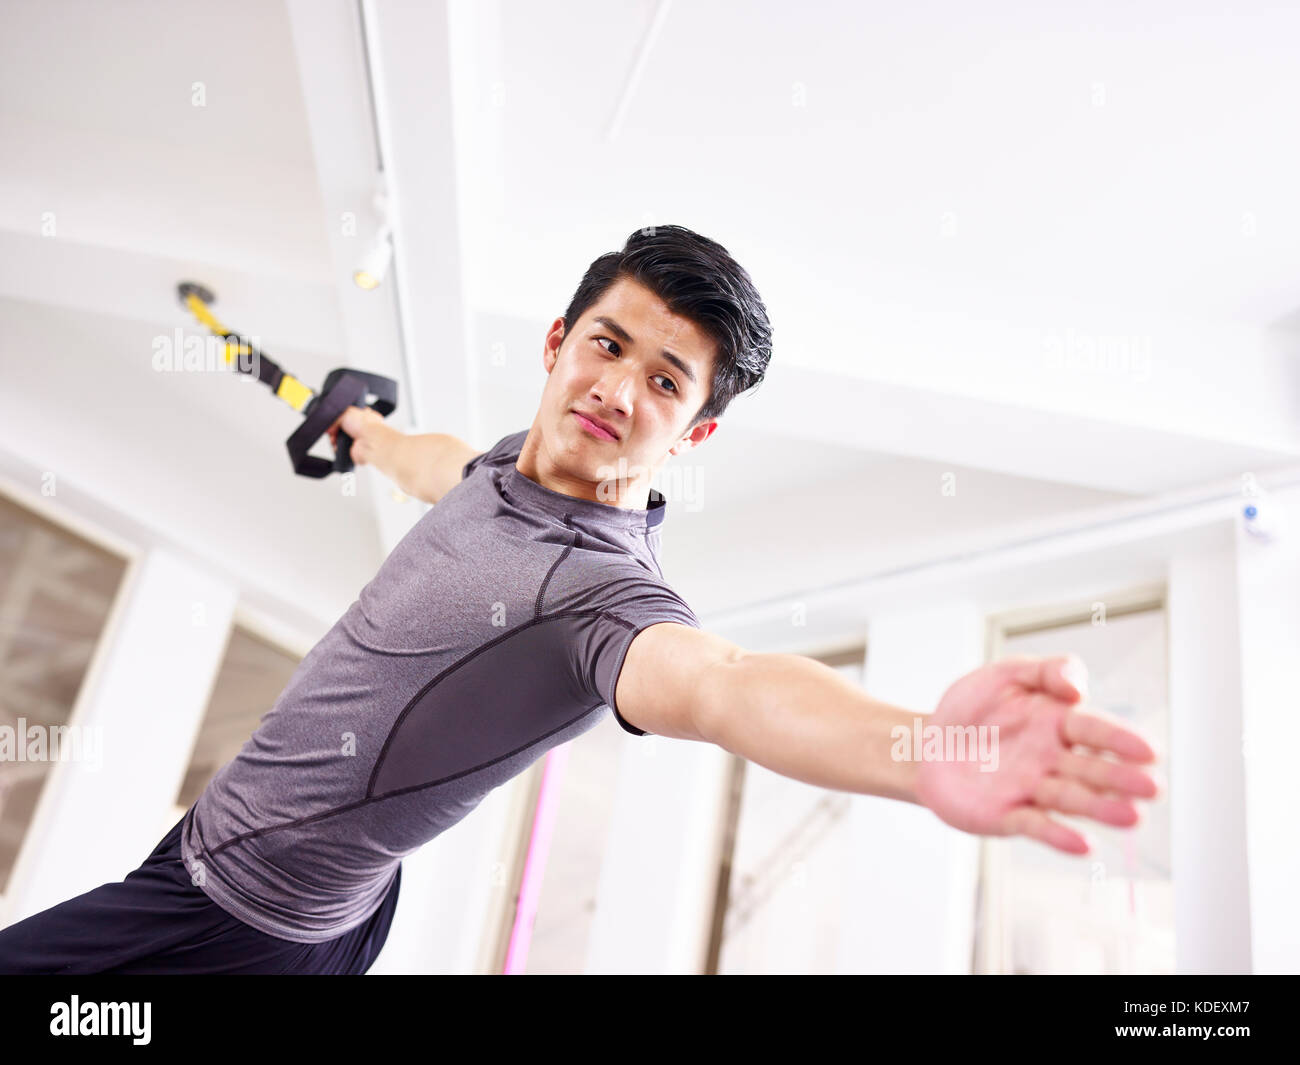 Junge asiatischer Mann das Trainieren im Fitnessstudio mit Fitness-Trägern. Stockfoto